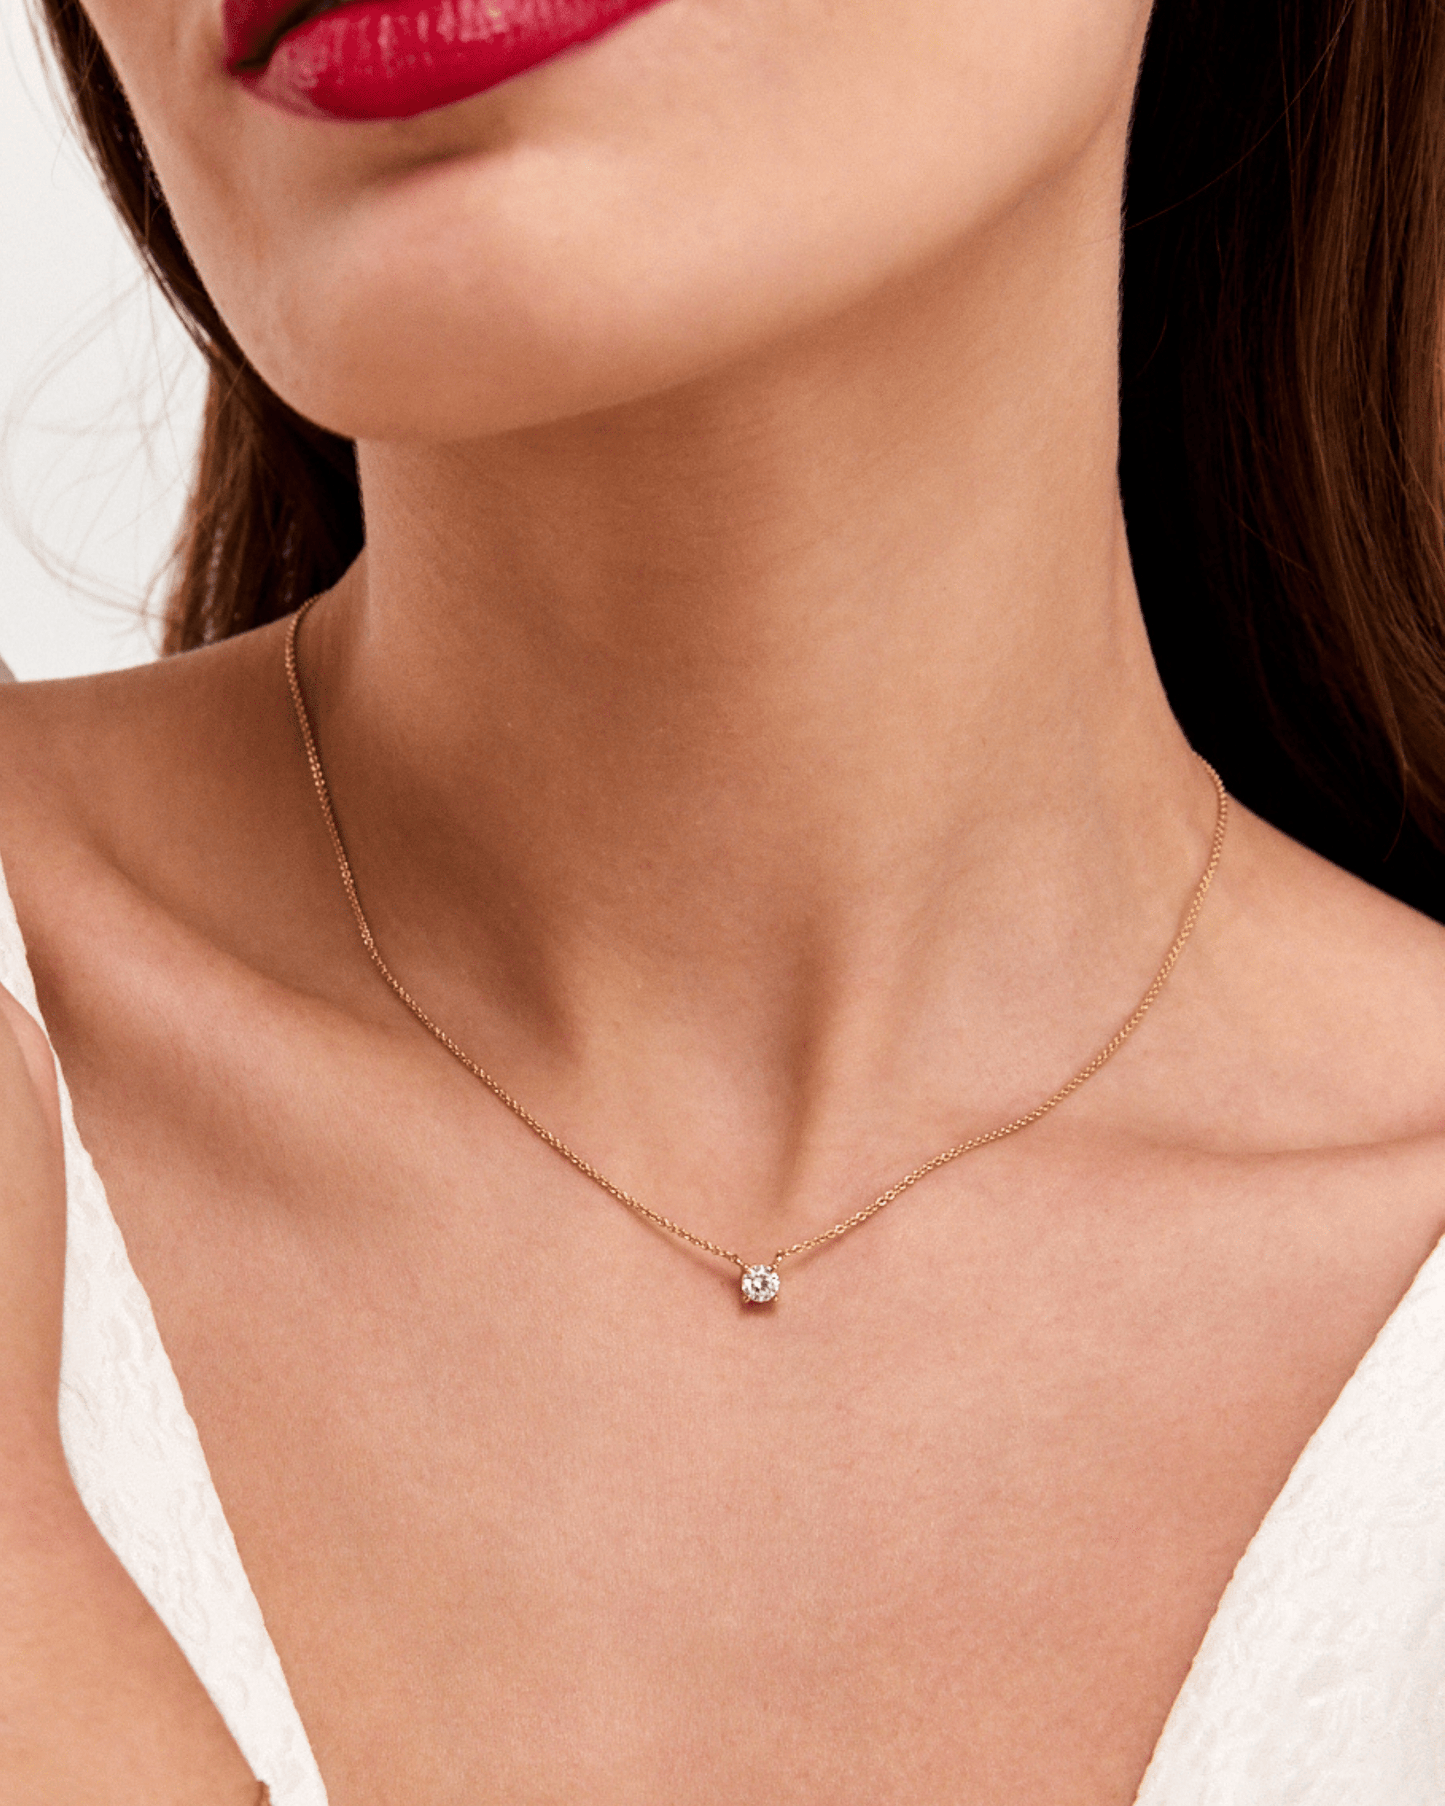 Round Solitaire Diamond Necklace - 18K Rose Vermeil Necklaces magal-dev 